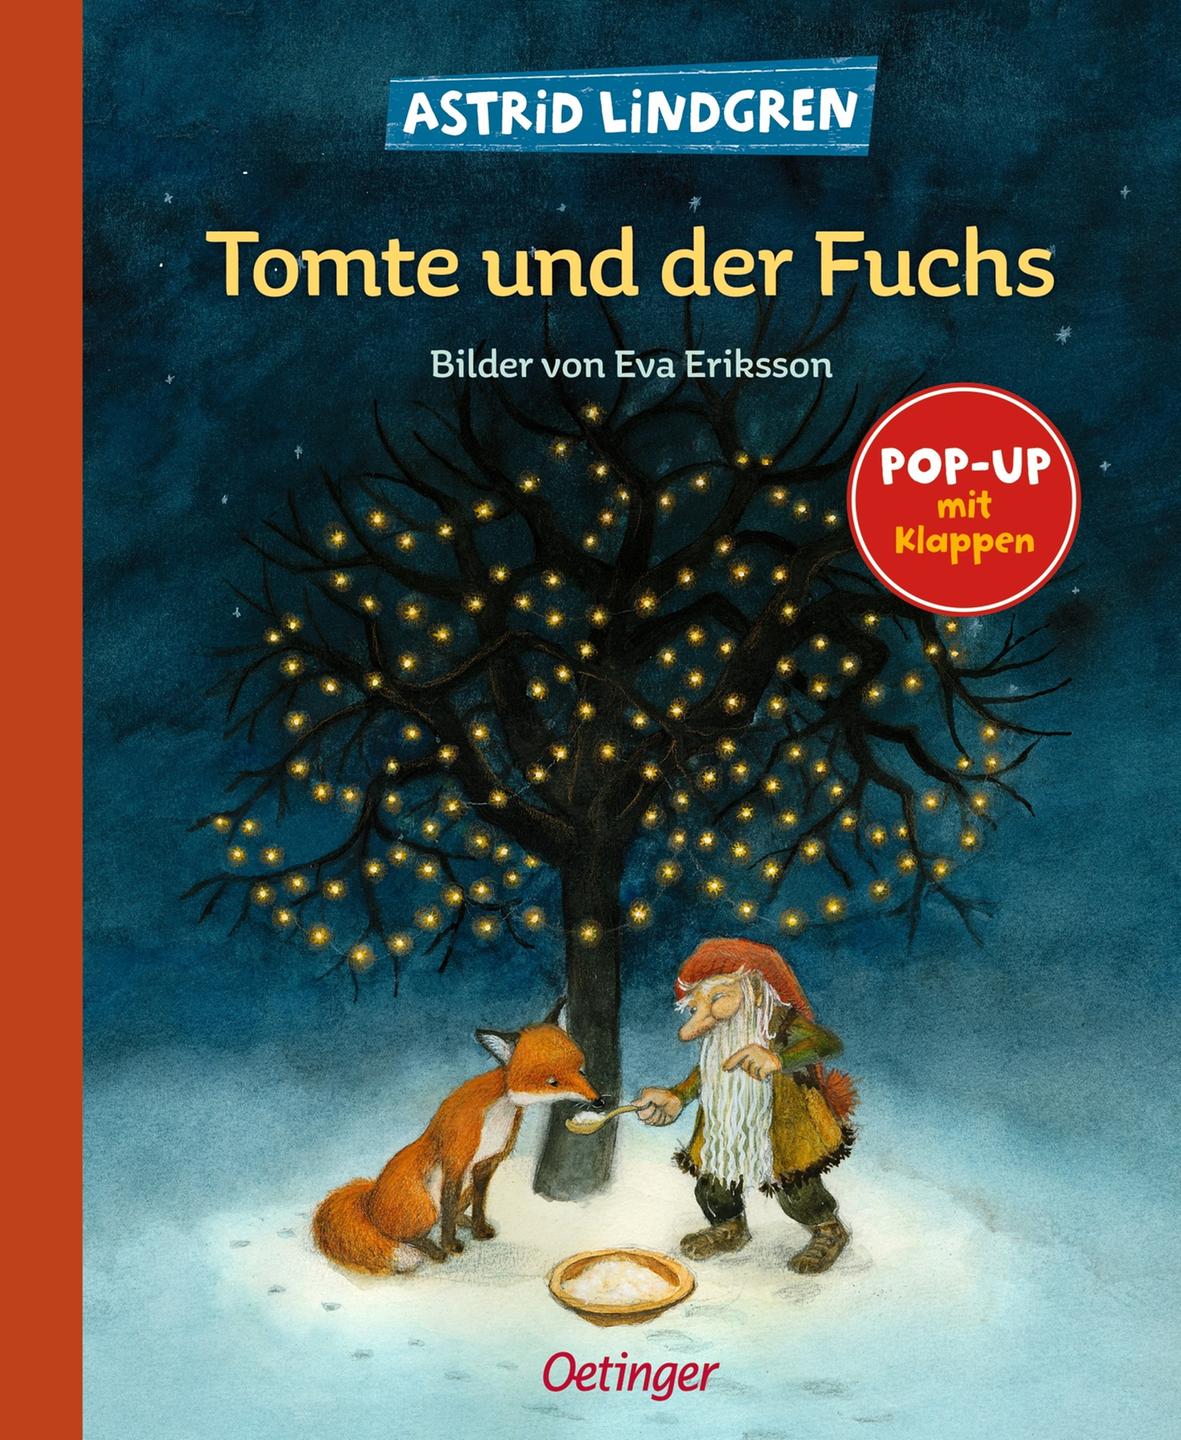 Cover des Buches "Tomte und der Fuchs" von Astrid Lindgren